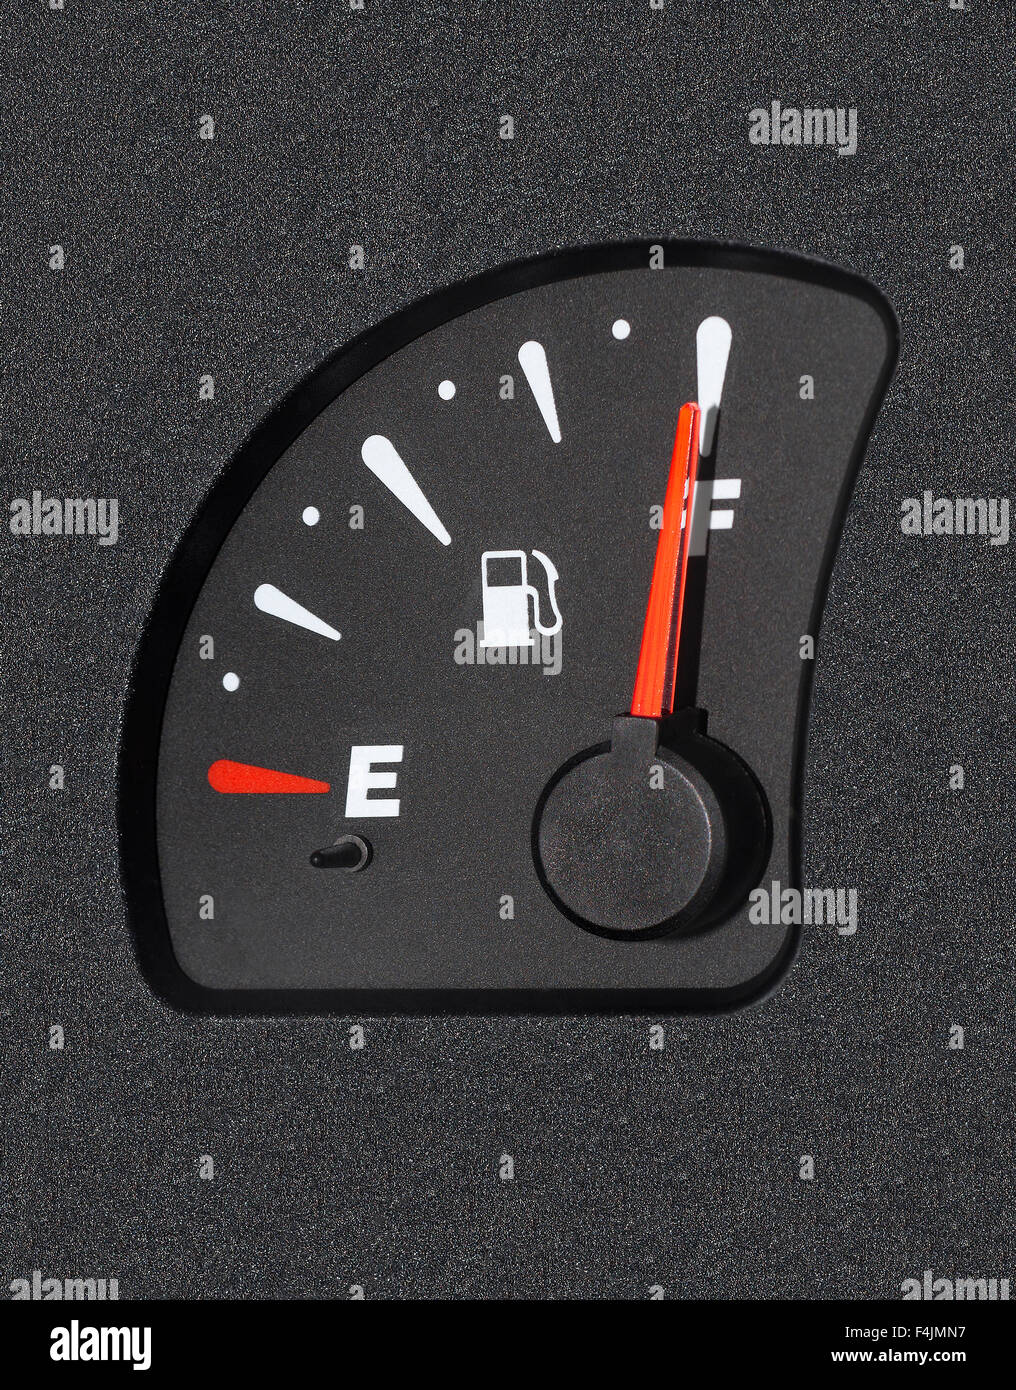 Ein Auto Kraftstoff Manometer zeigt vollen tank Stockfotografie